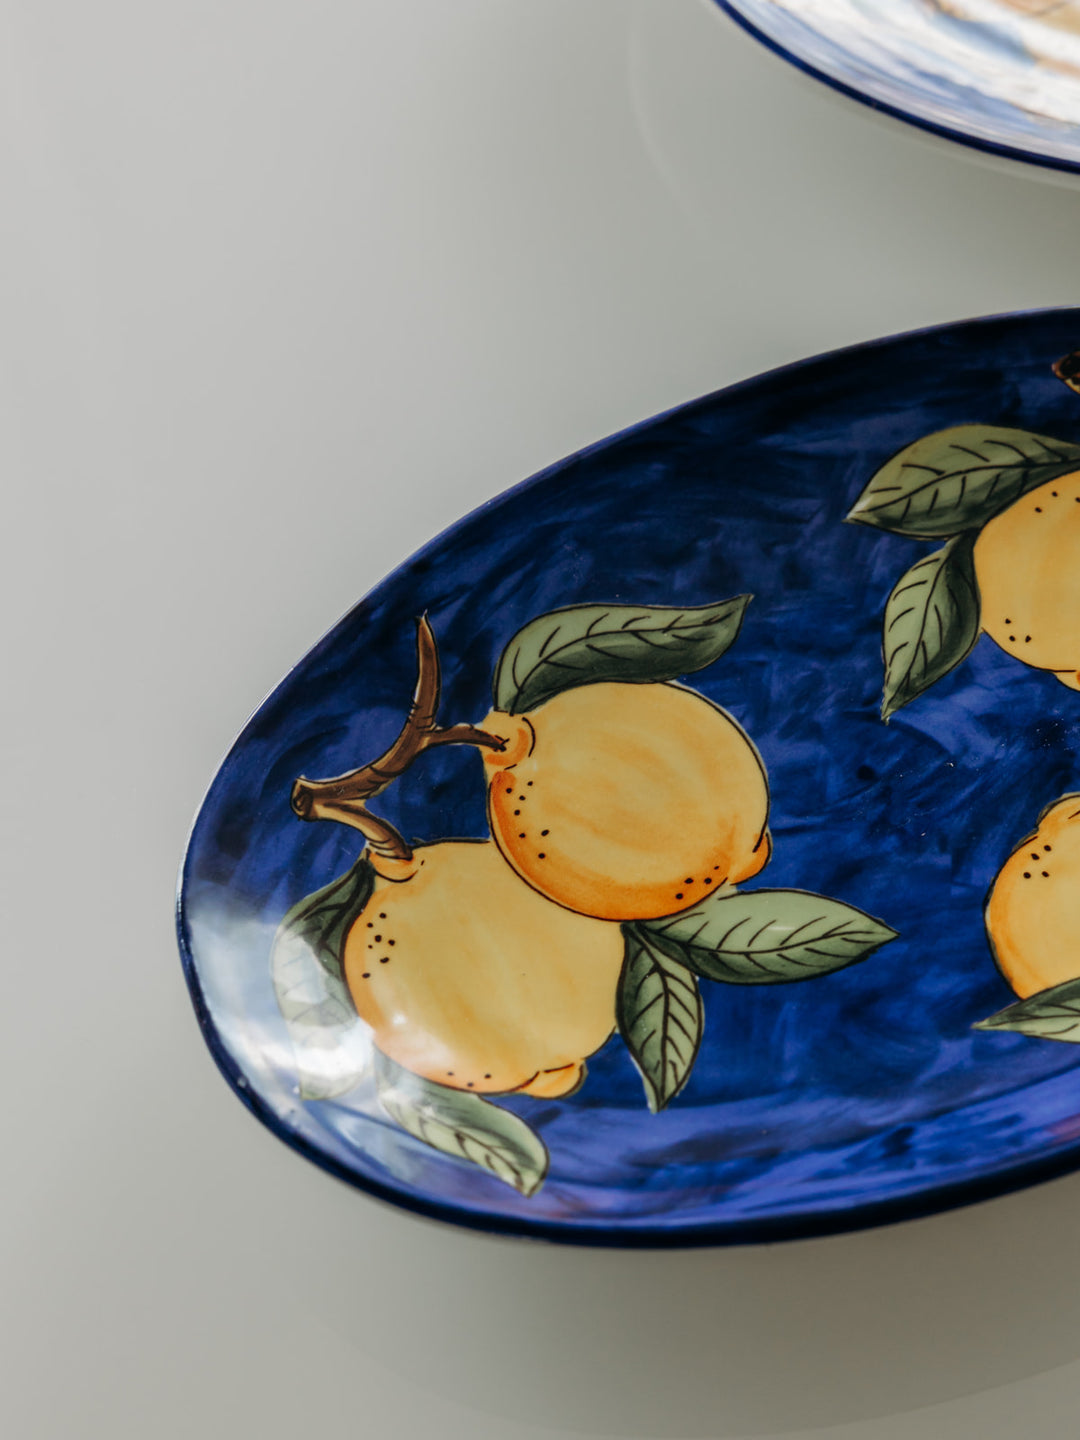 Livio, the large ceramic dish